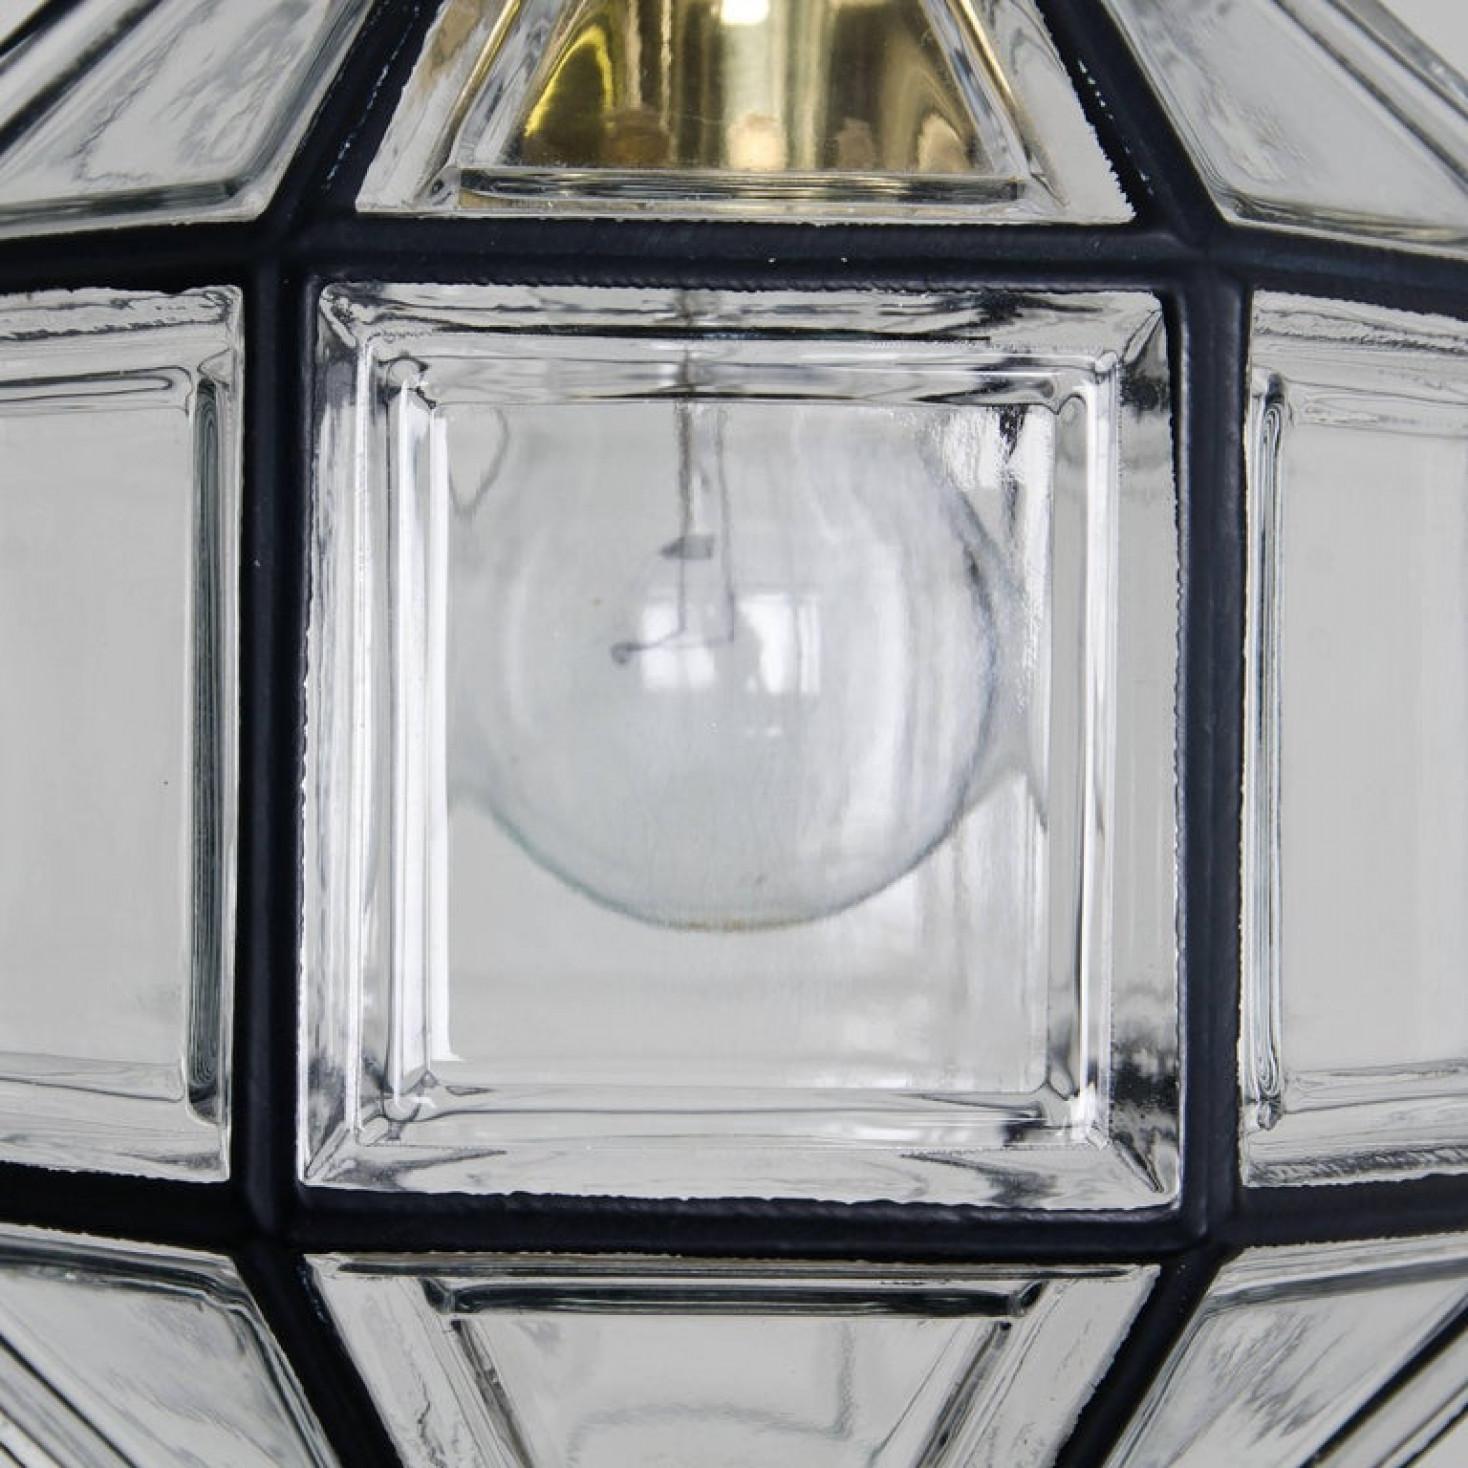 Diese achteckigen Pendelleuchten aus Glas wurden in den 1960er Jahren von der Glashütte Limburg in Deutschland hergestellt. Schöne Handwerkskunst.

Die Leuchte aus kunstvollem Klarglas verfügt über eine E27-Fassung und eine